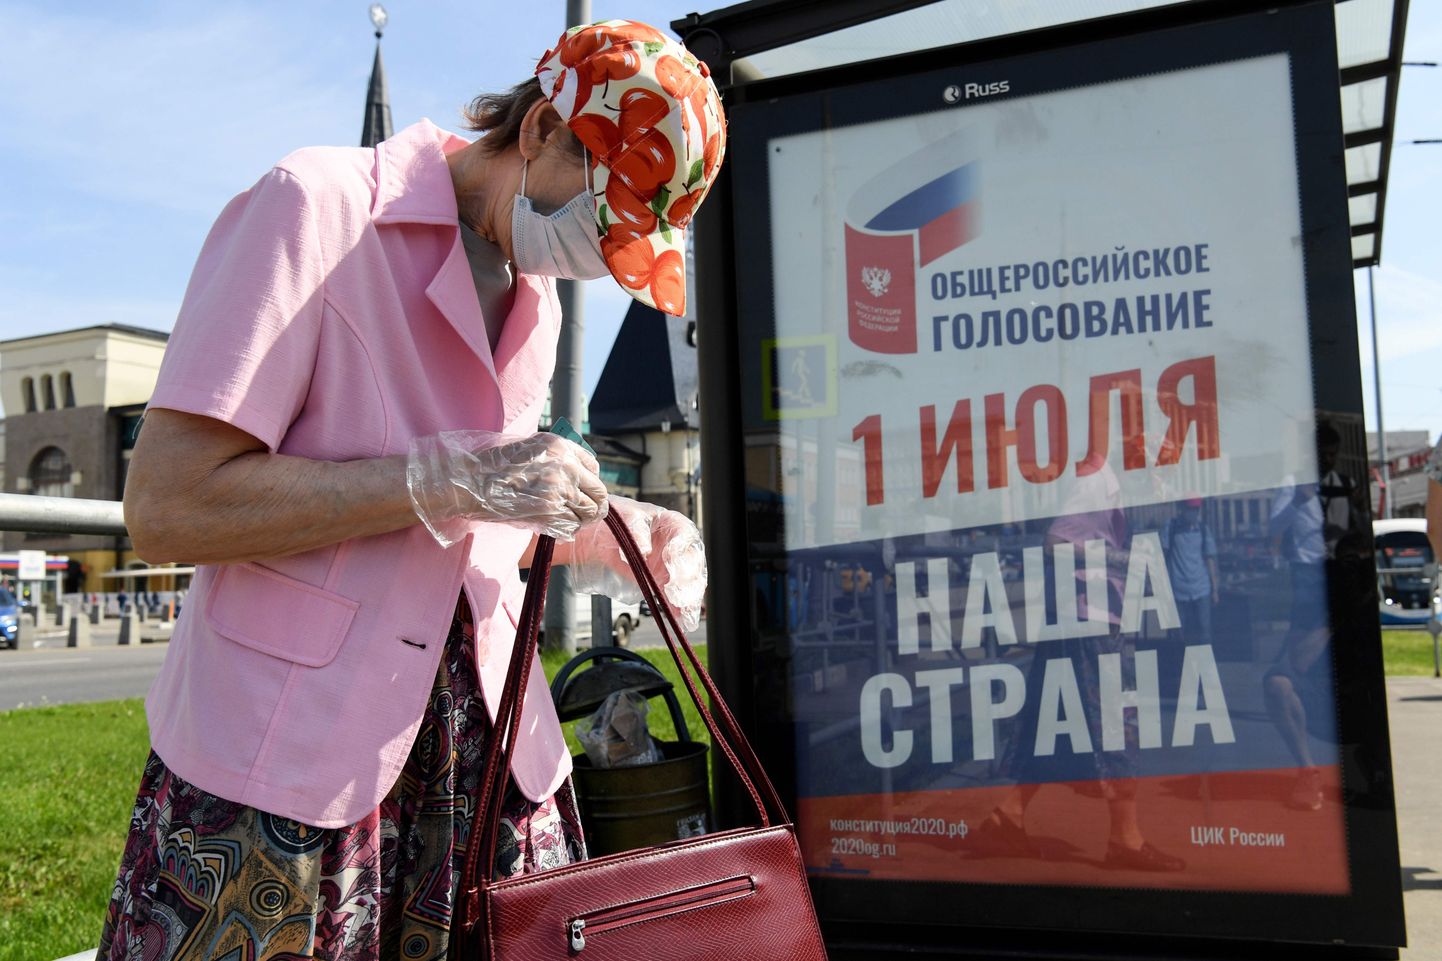 Naine Moskva trammipeatuses põhiseadusmuudatuste rahvahääletuse plakati ees 17. juuni 2020.